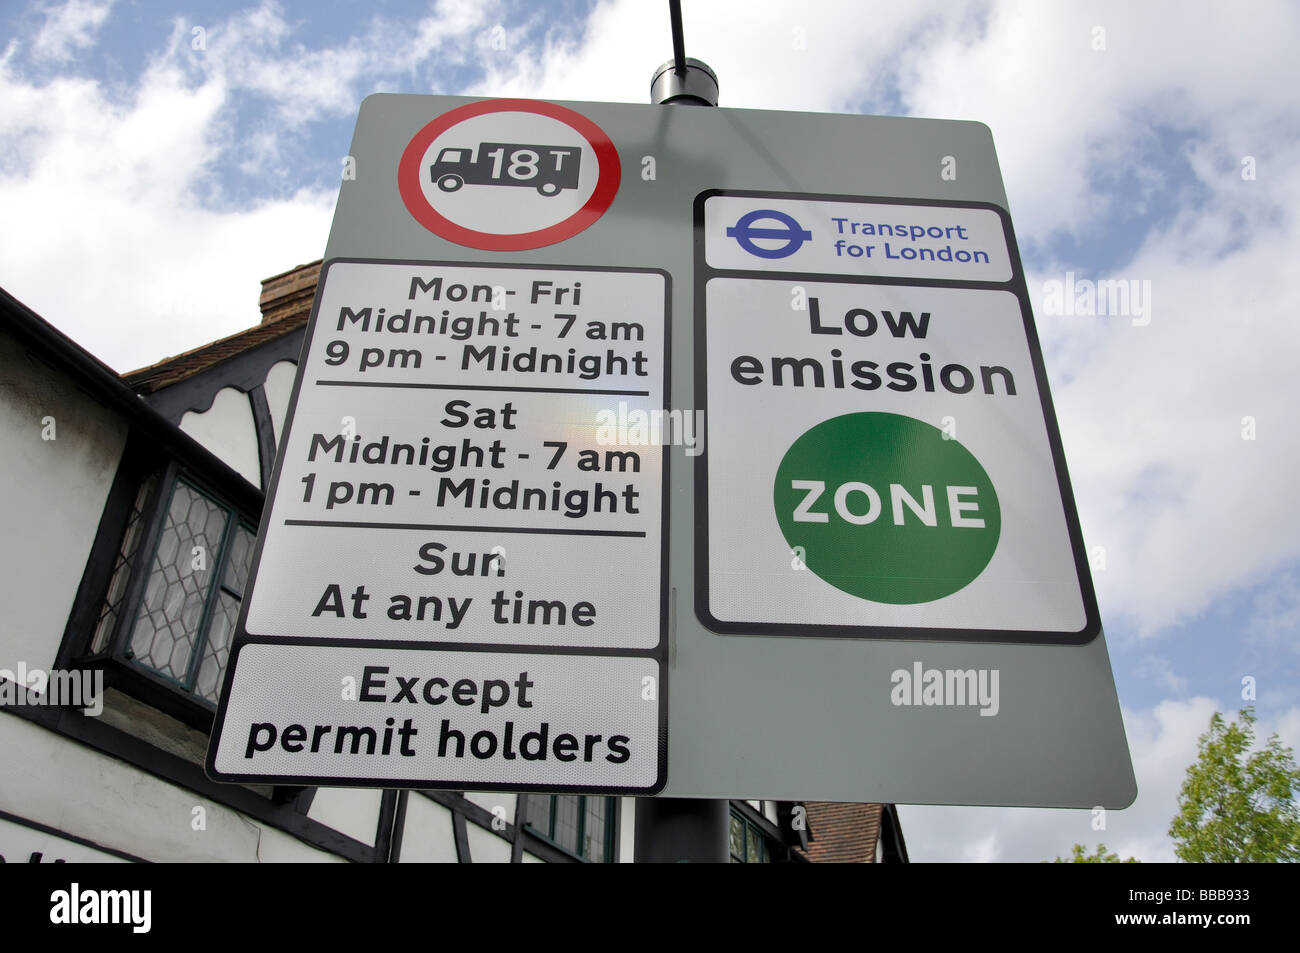 Londra basse emissioni segno, Cheam, Greater London, England, Regno Unito Foto Stock